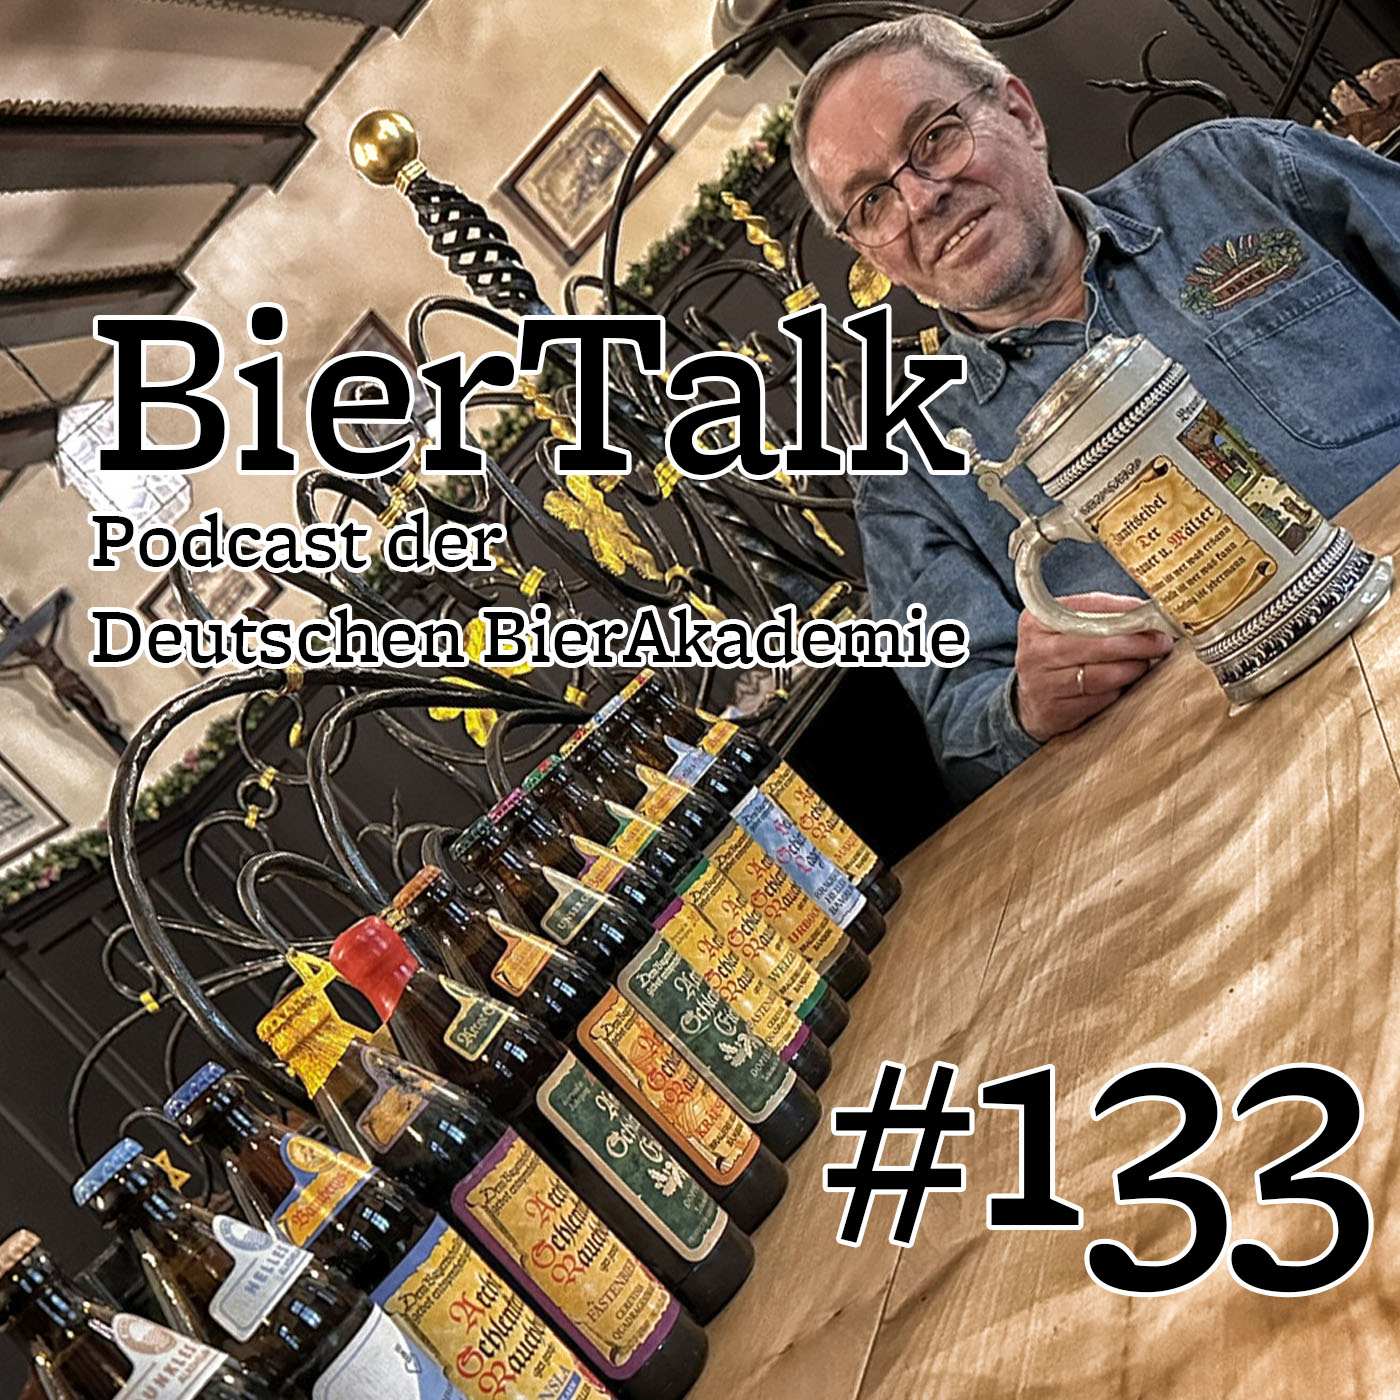 BierTalk 133 – Interview I mit Martin Knab, Altbraumeister der Brauerei Schlenkerla / Heller Bräu, Bamberg